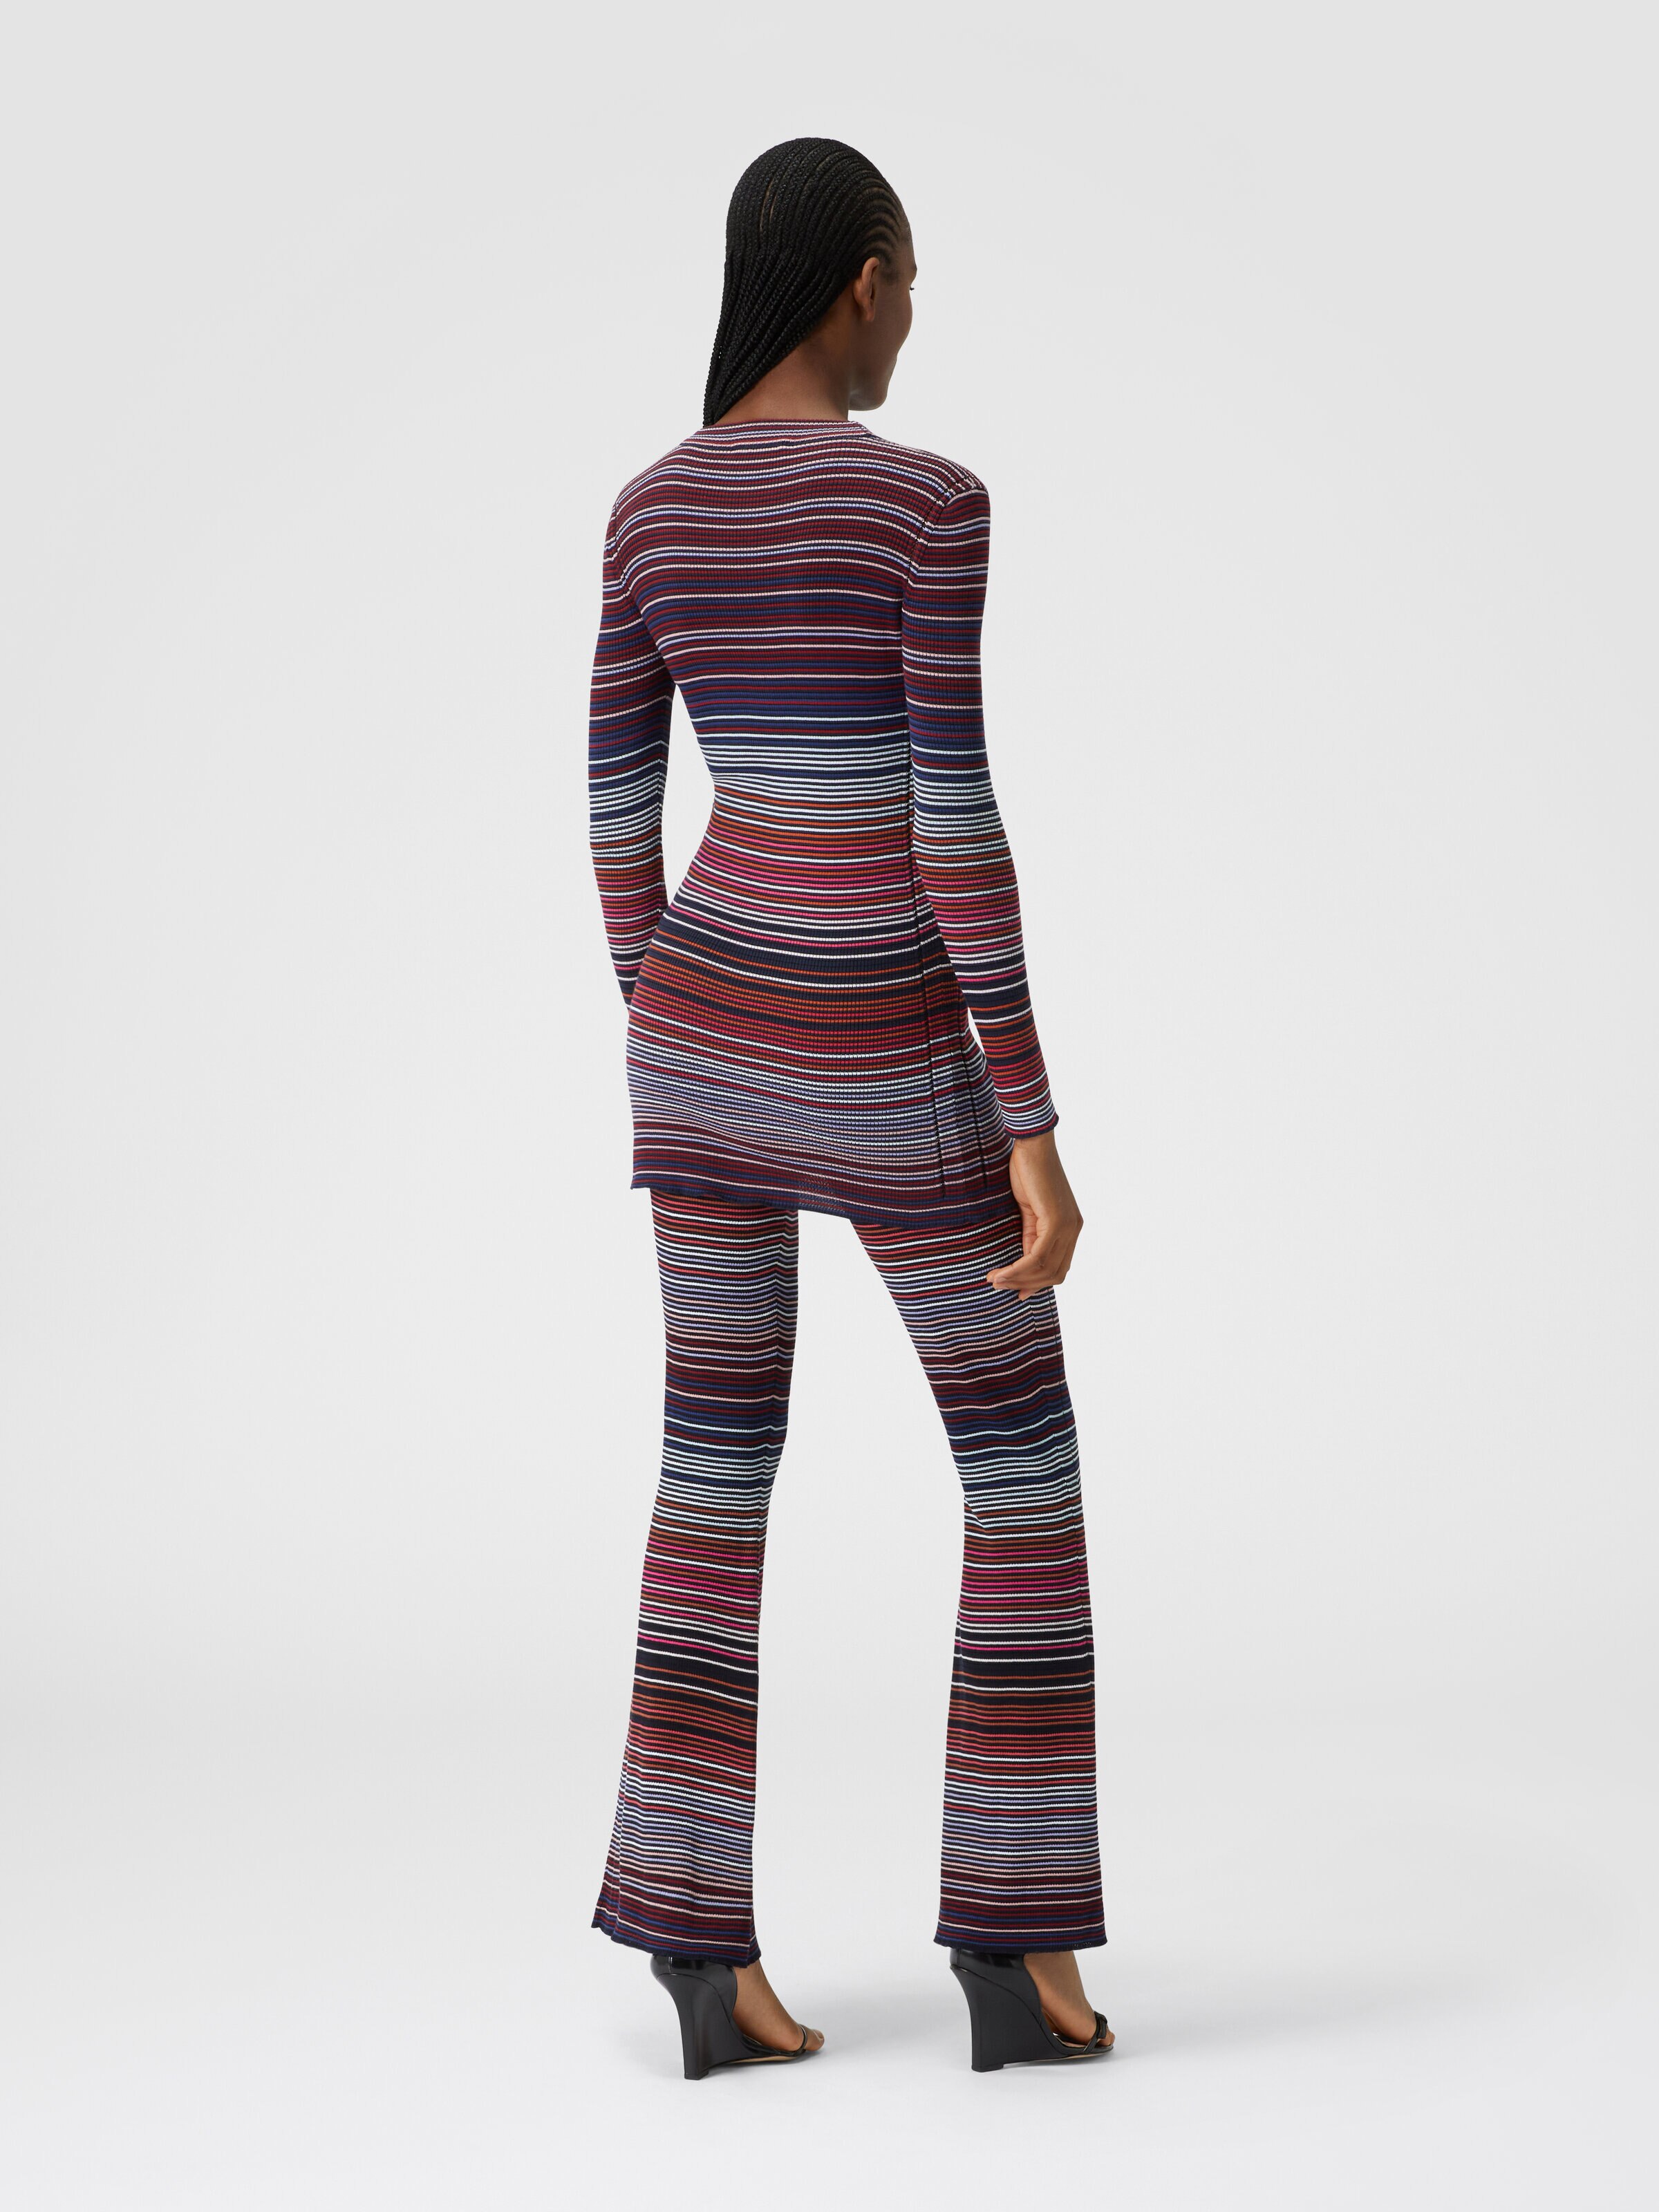 Cardigan in striped viscose and cotton , Multicoloured  - 2